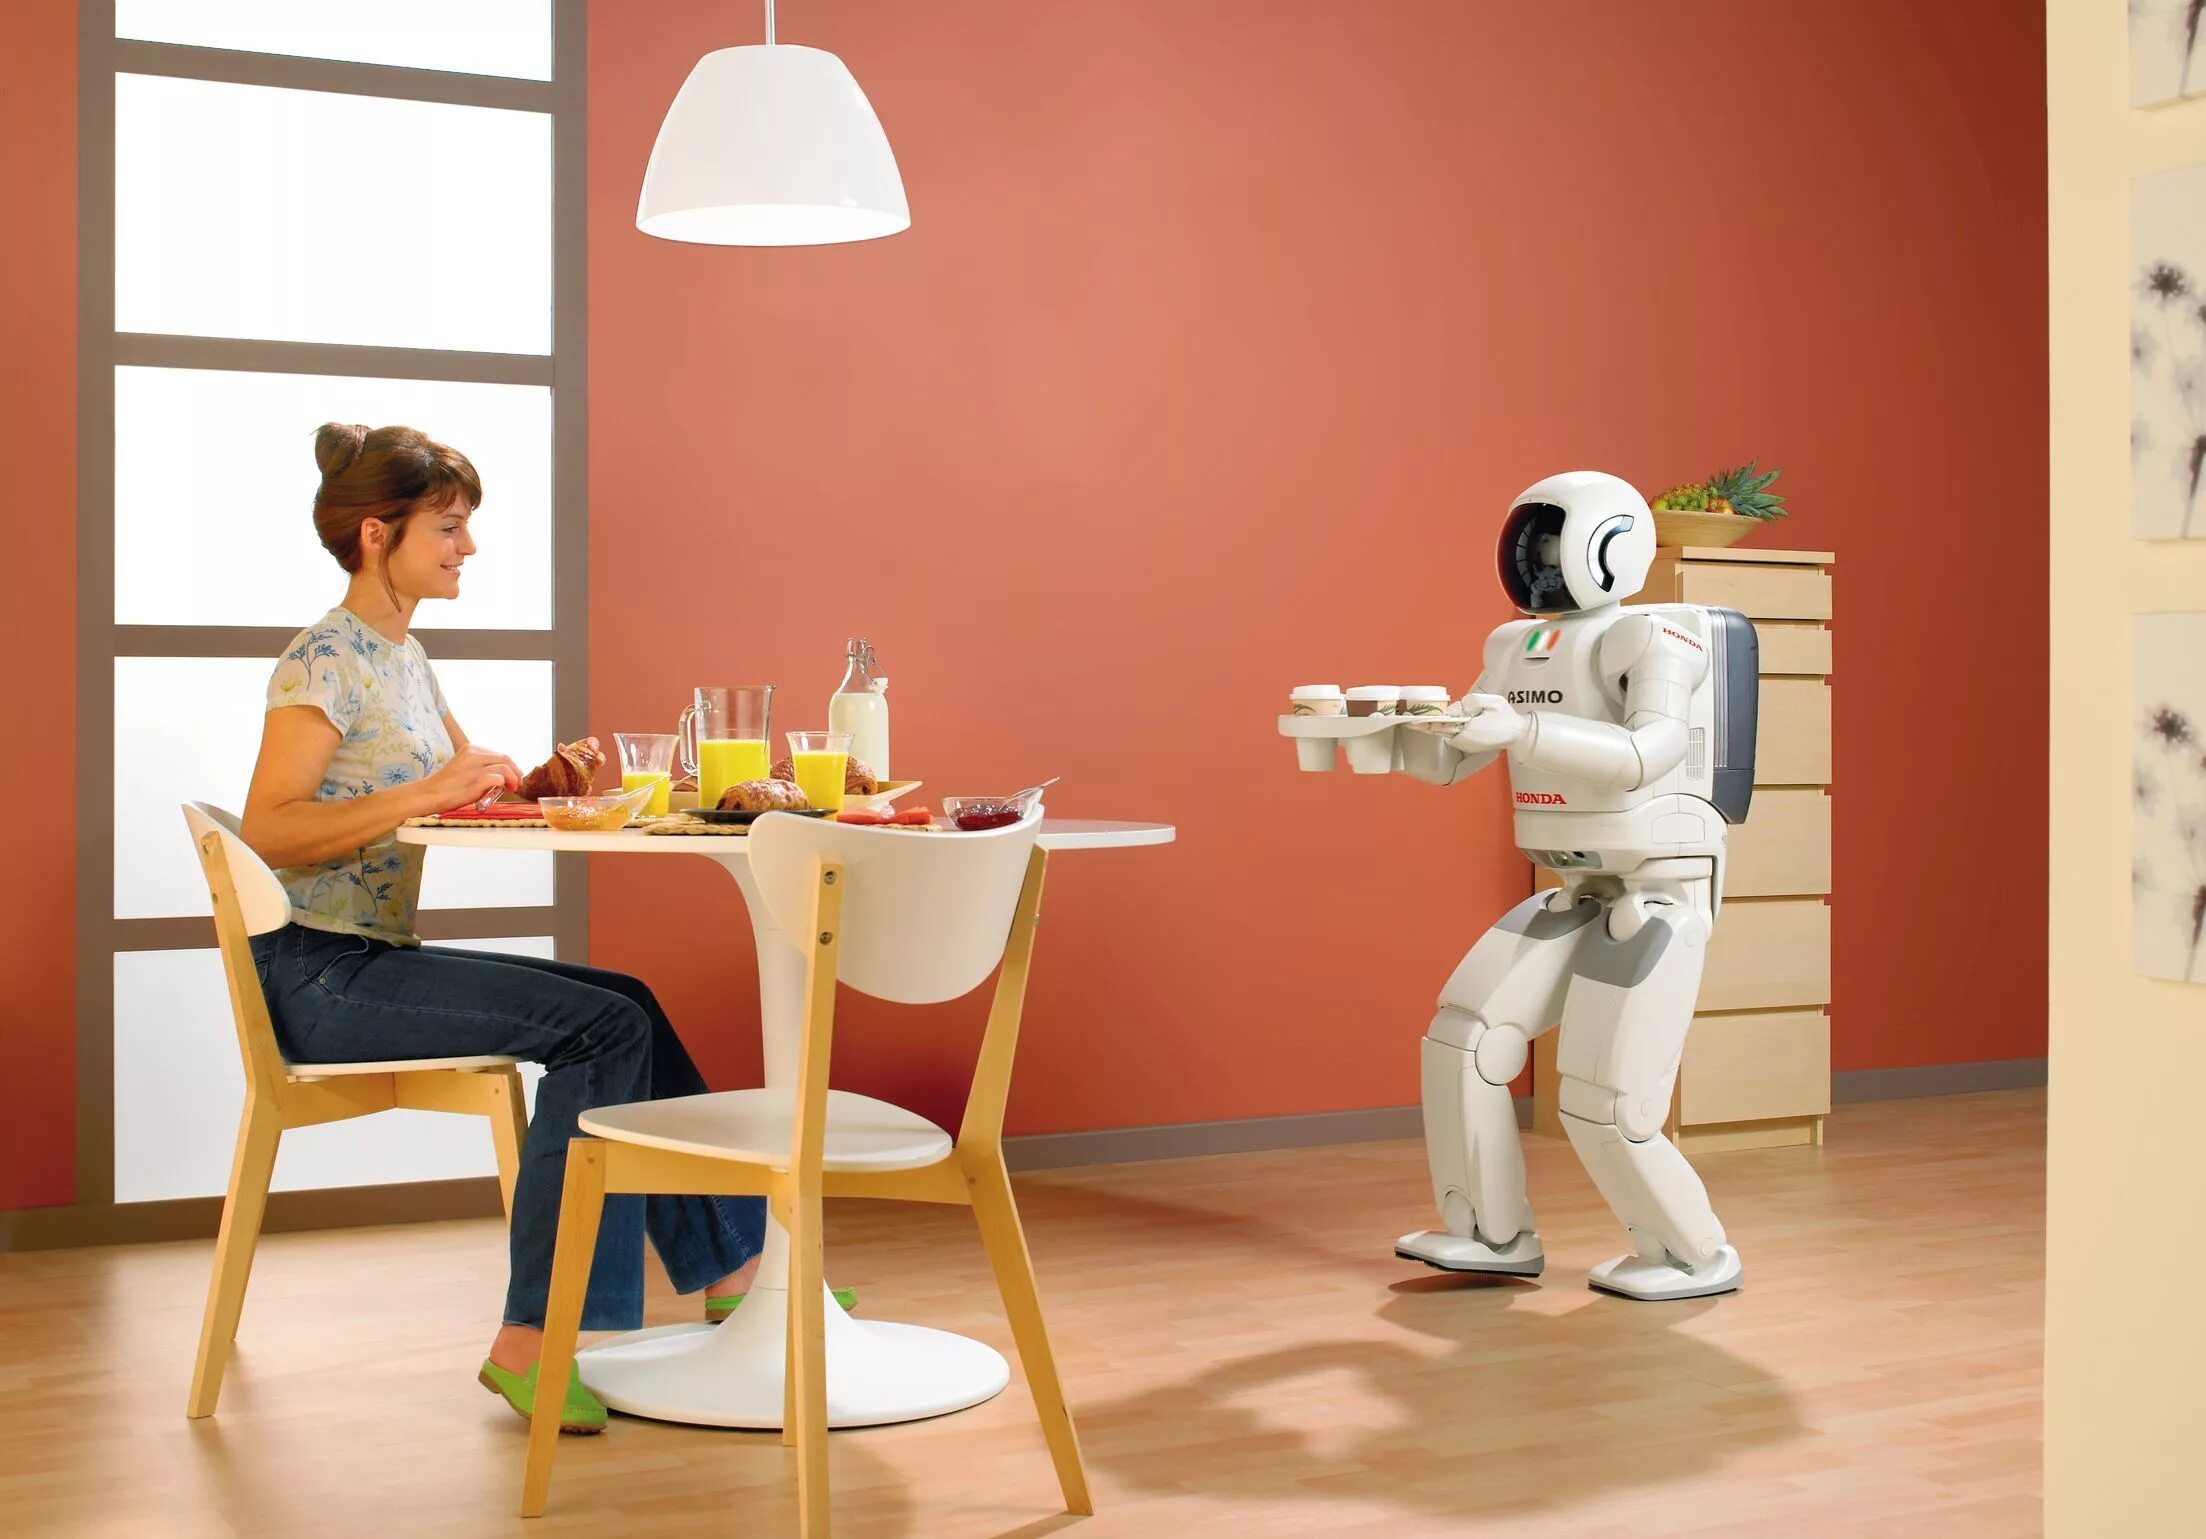 Роботы мечты и реальность. Бытовые роботы. Робот помощник по дому. Роботы помощники в быту. Домашние роботы помощники.